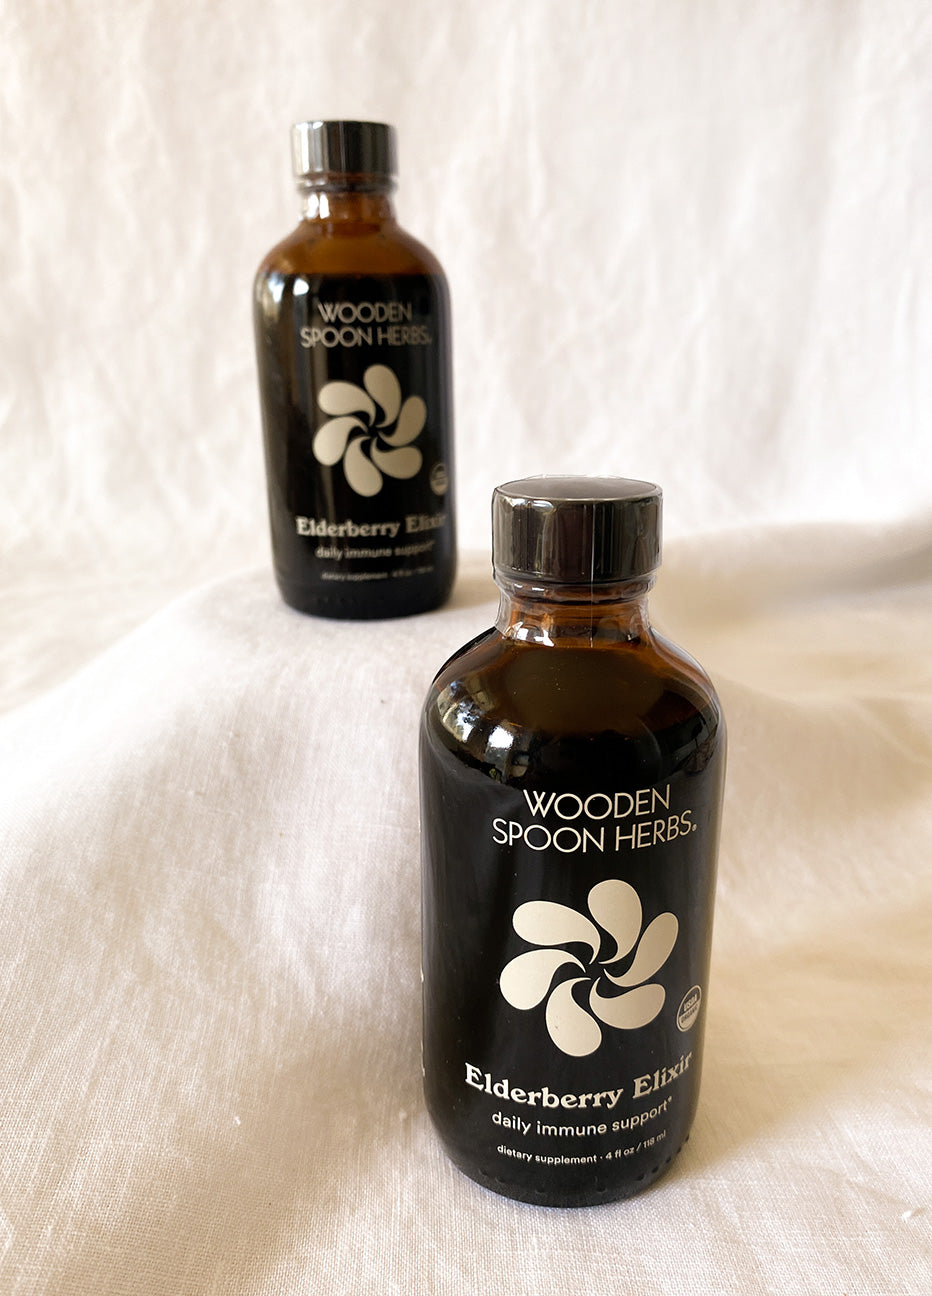 Wooden Spoon Herbs Elderberry Elixir